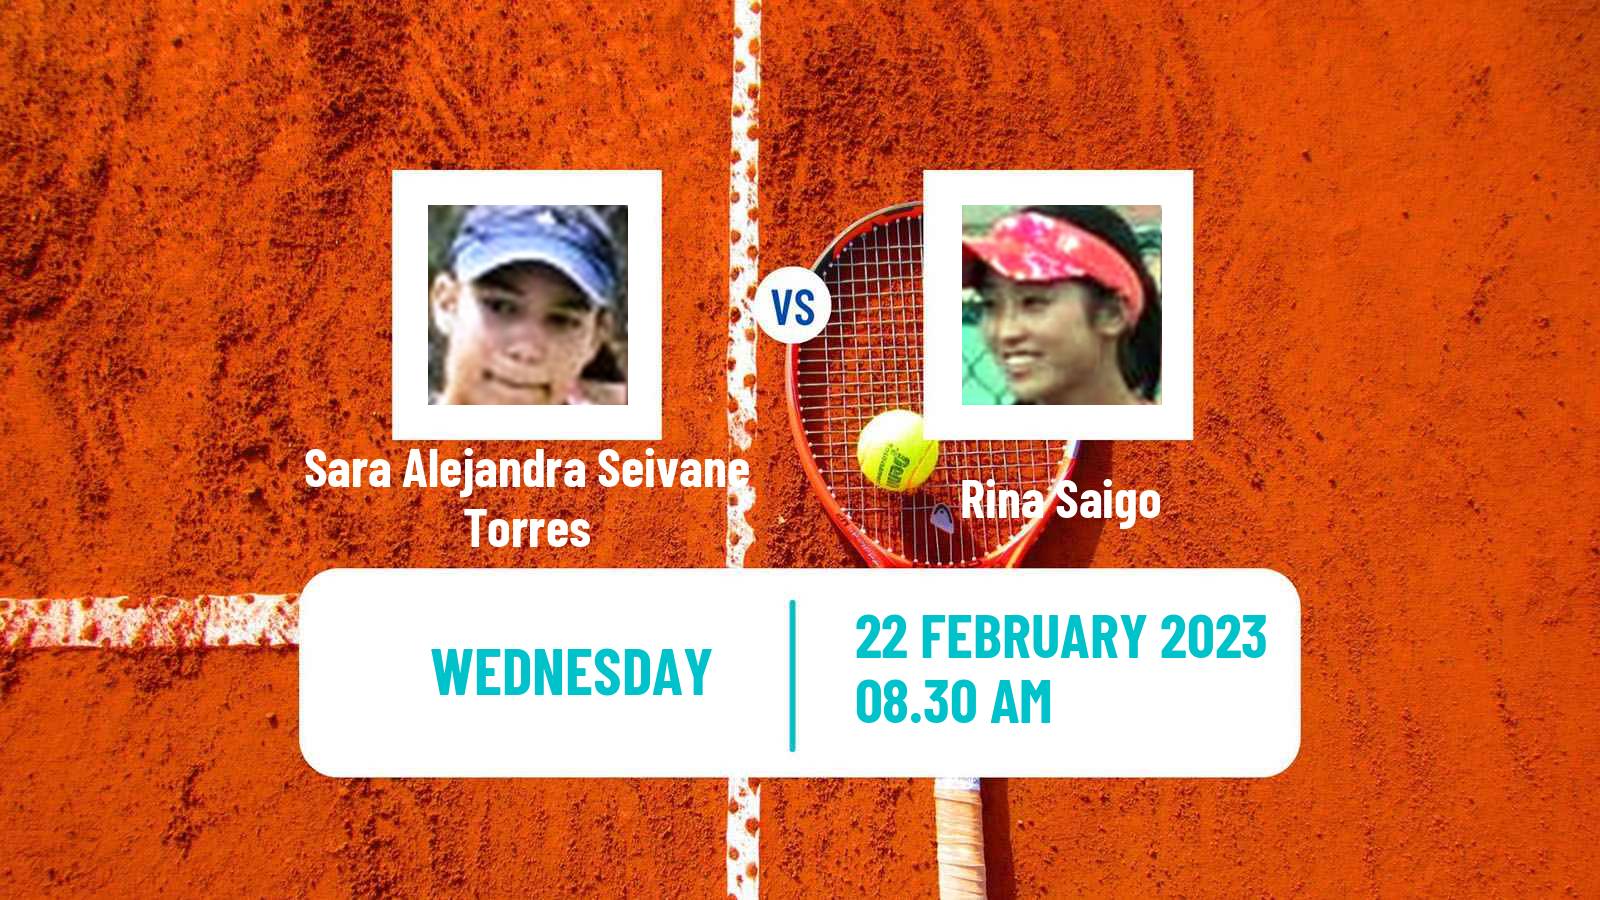 Tennis ITF Tournaments Sara Alejandra Seivane Torres - Rina Saigo